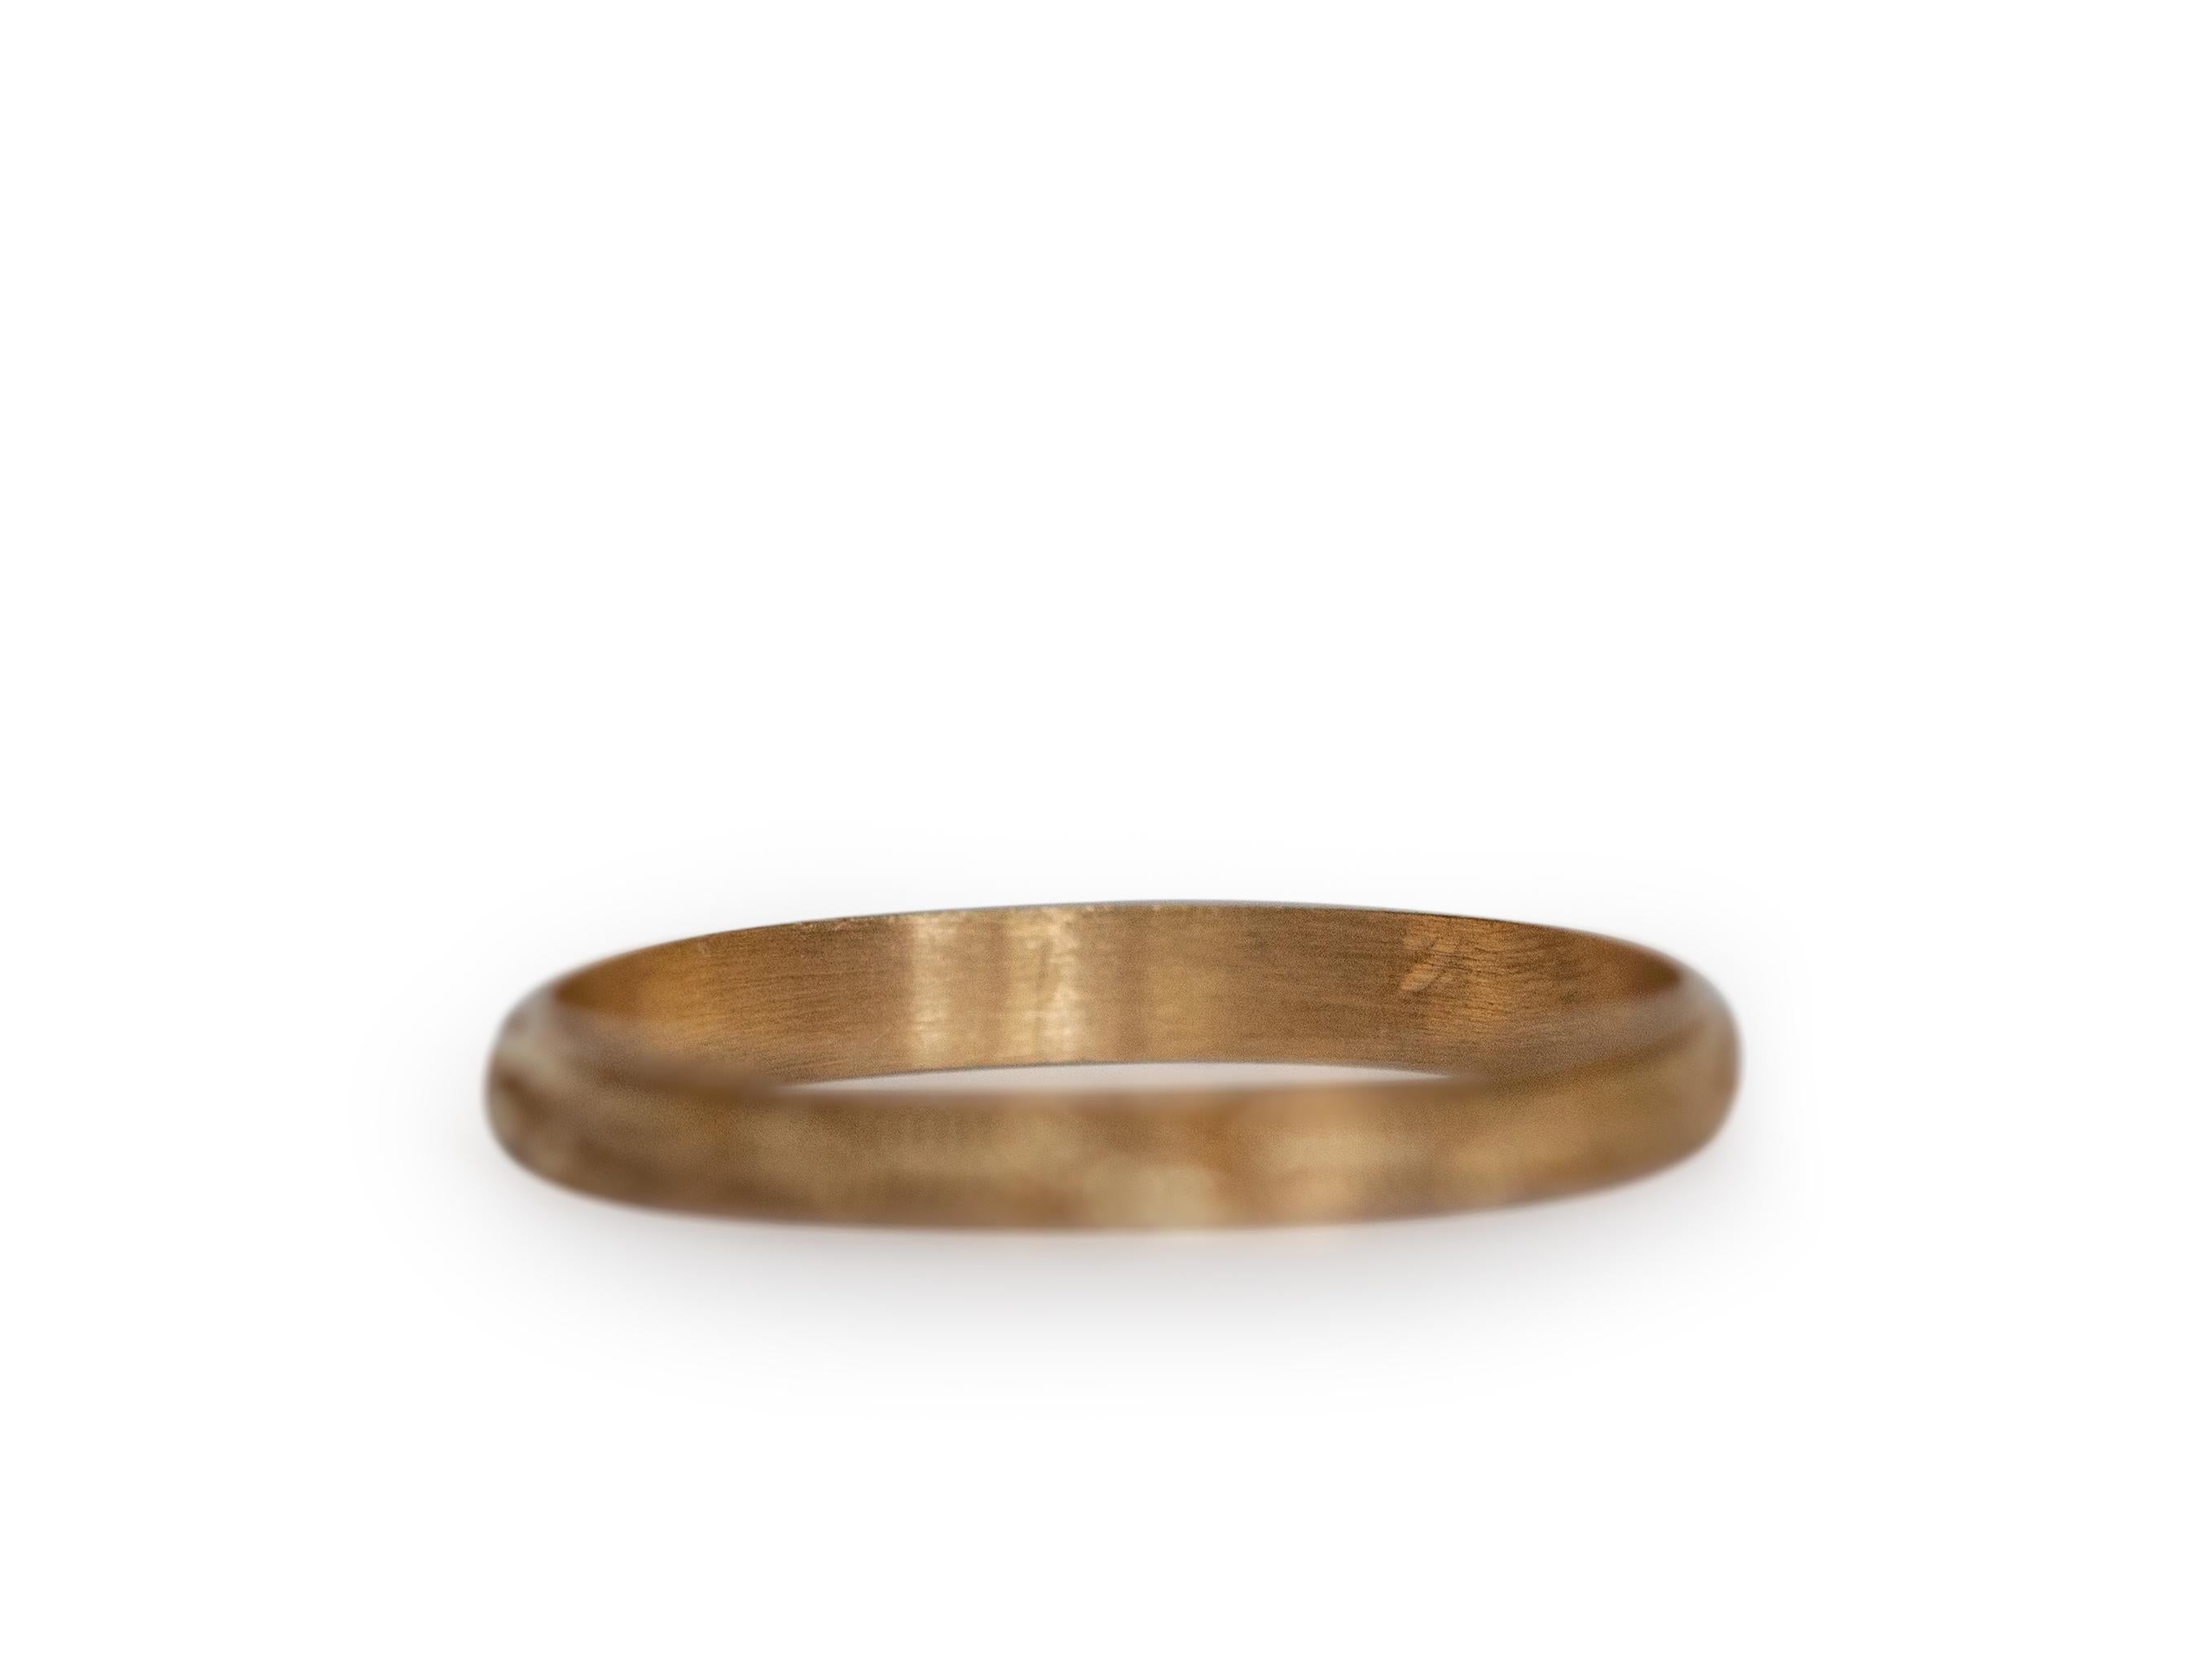 Ringgröße: 5.5
Metall Typ: 14k Gelbgold  [Gepunzt und geprüft]
Gewicht:   1.5 Gramm

Messung Finger bis Oberkante Stein: 2 mm
Zustand:  Ausgezeichnet